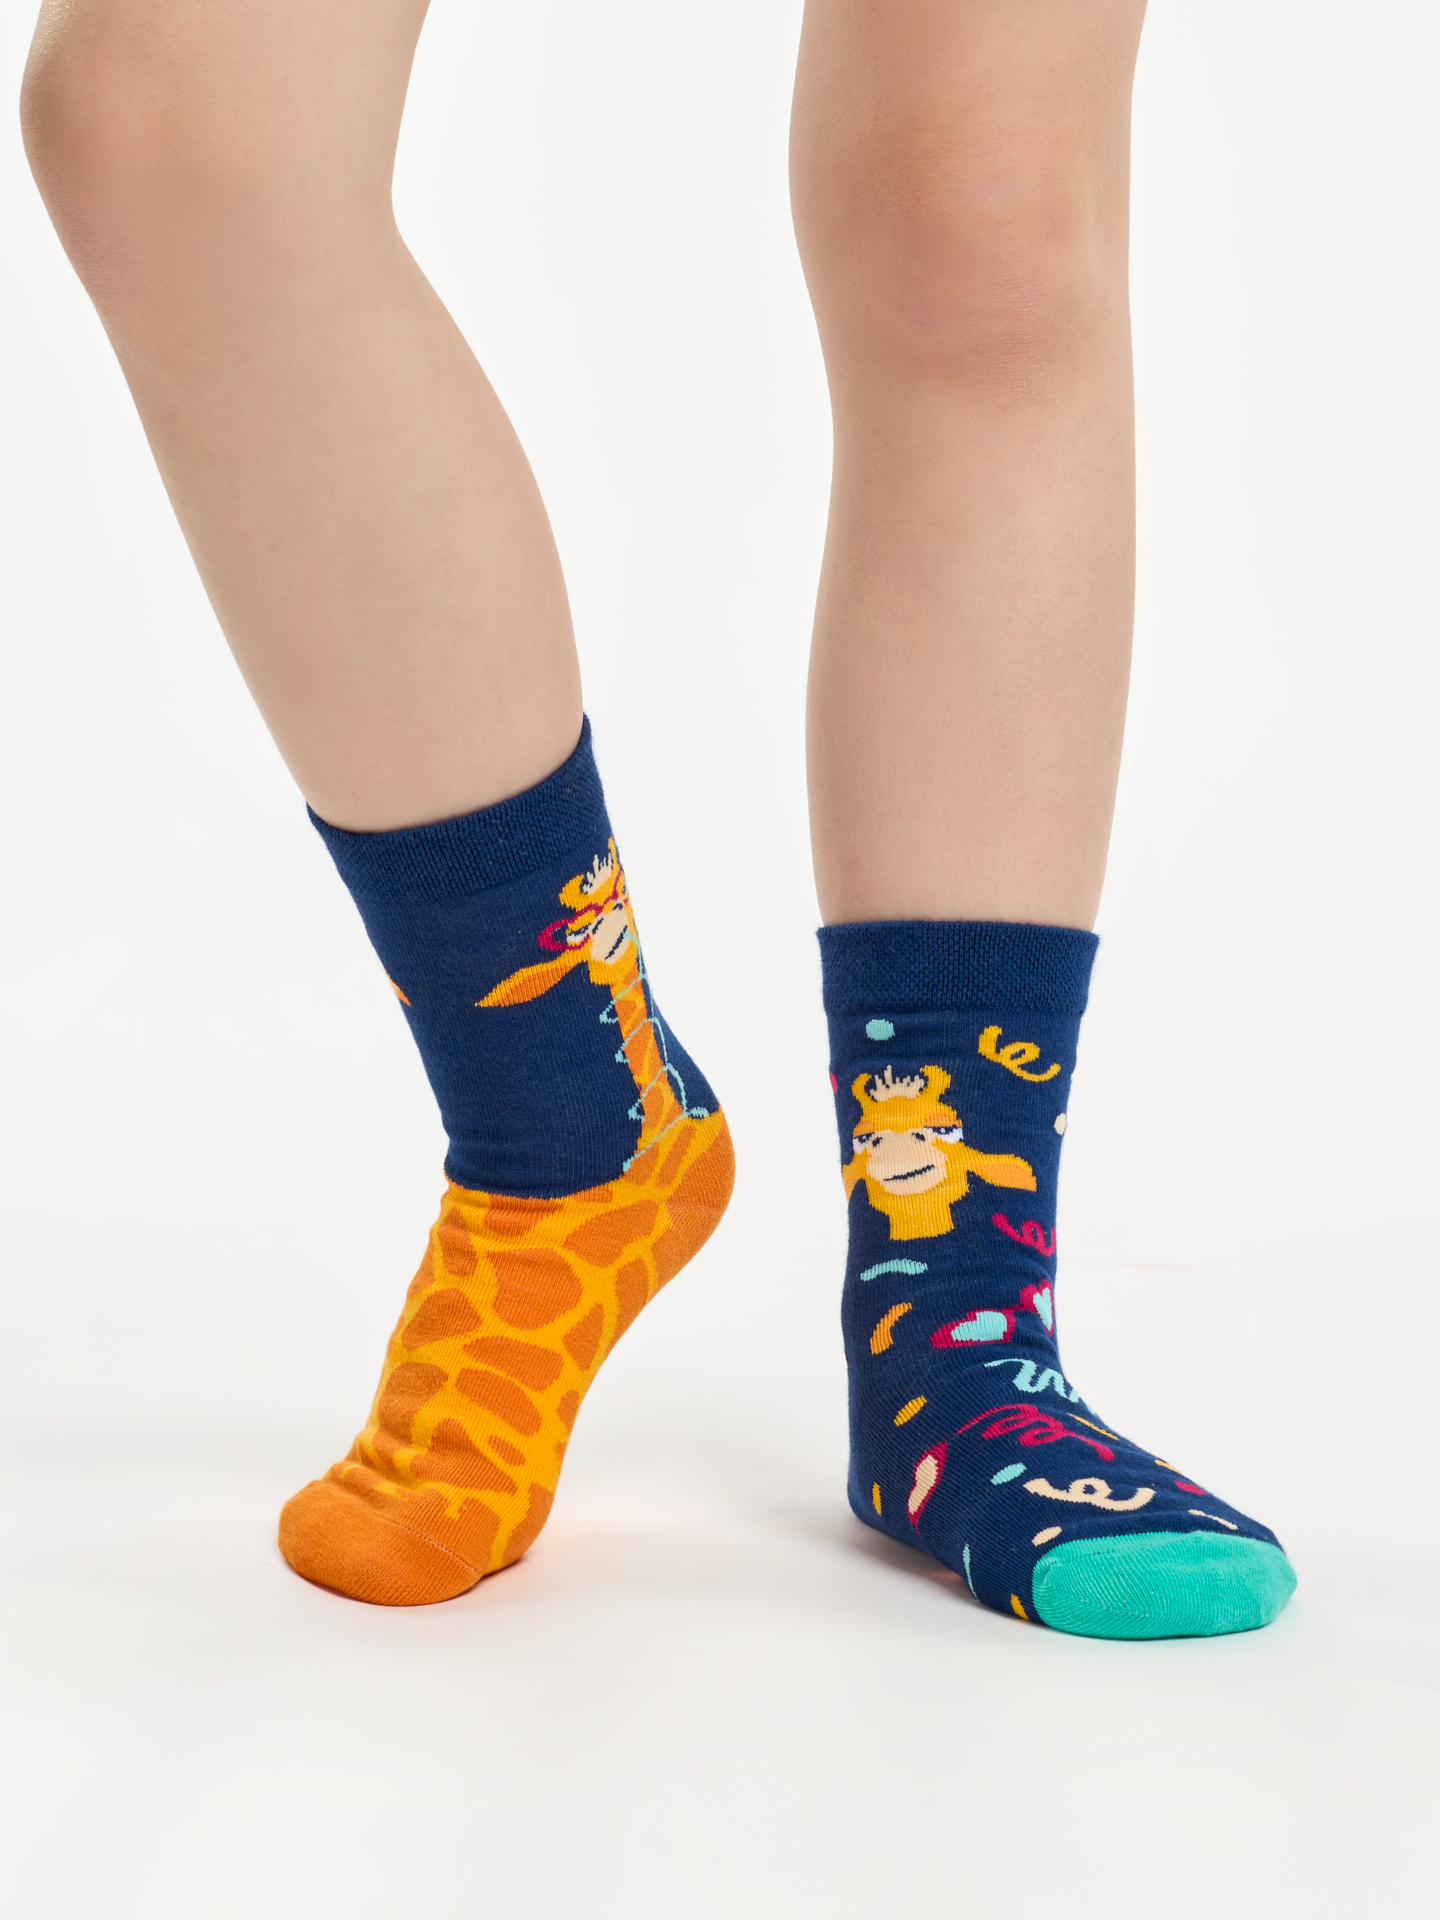 Kids' Socks Funny Giraffe